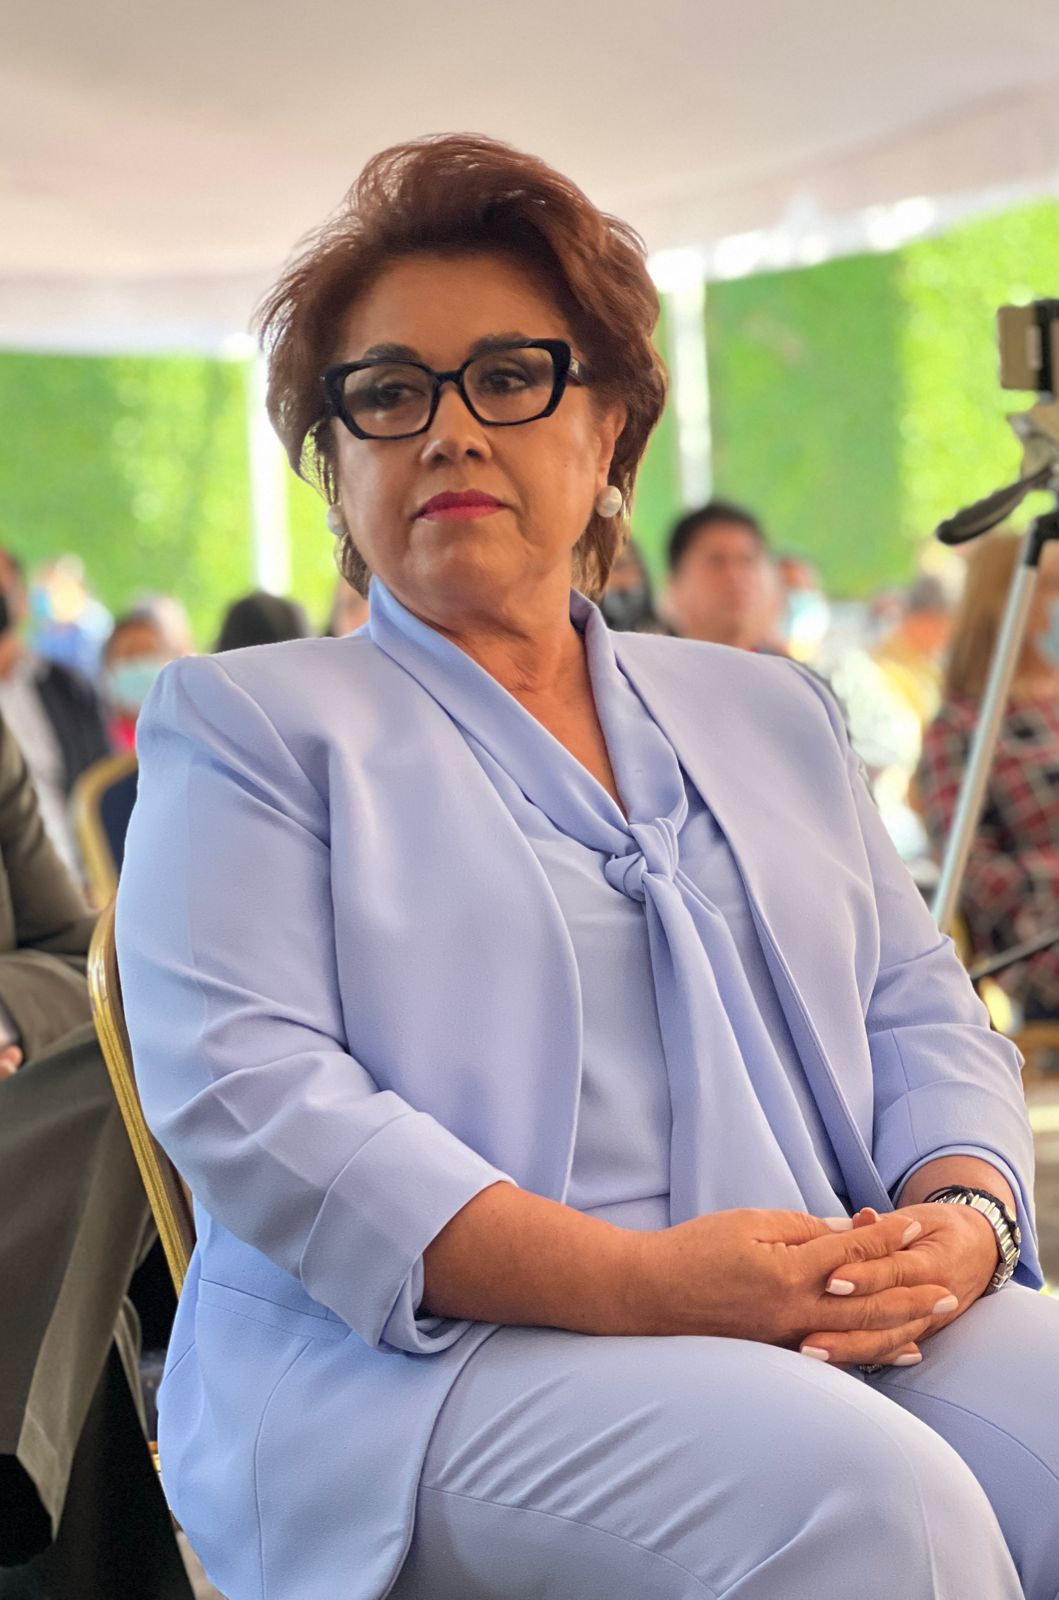 La presidenta de la Corte Suprema de Justicia, Rebeca Raquel Obando, también integrante de la Sala Constitucional. Foto/Cortesía Ciclos CAP.